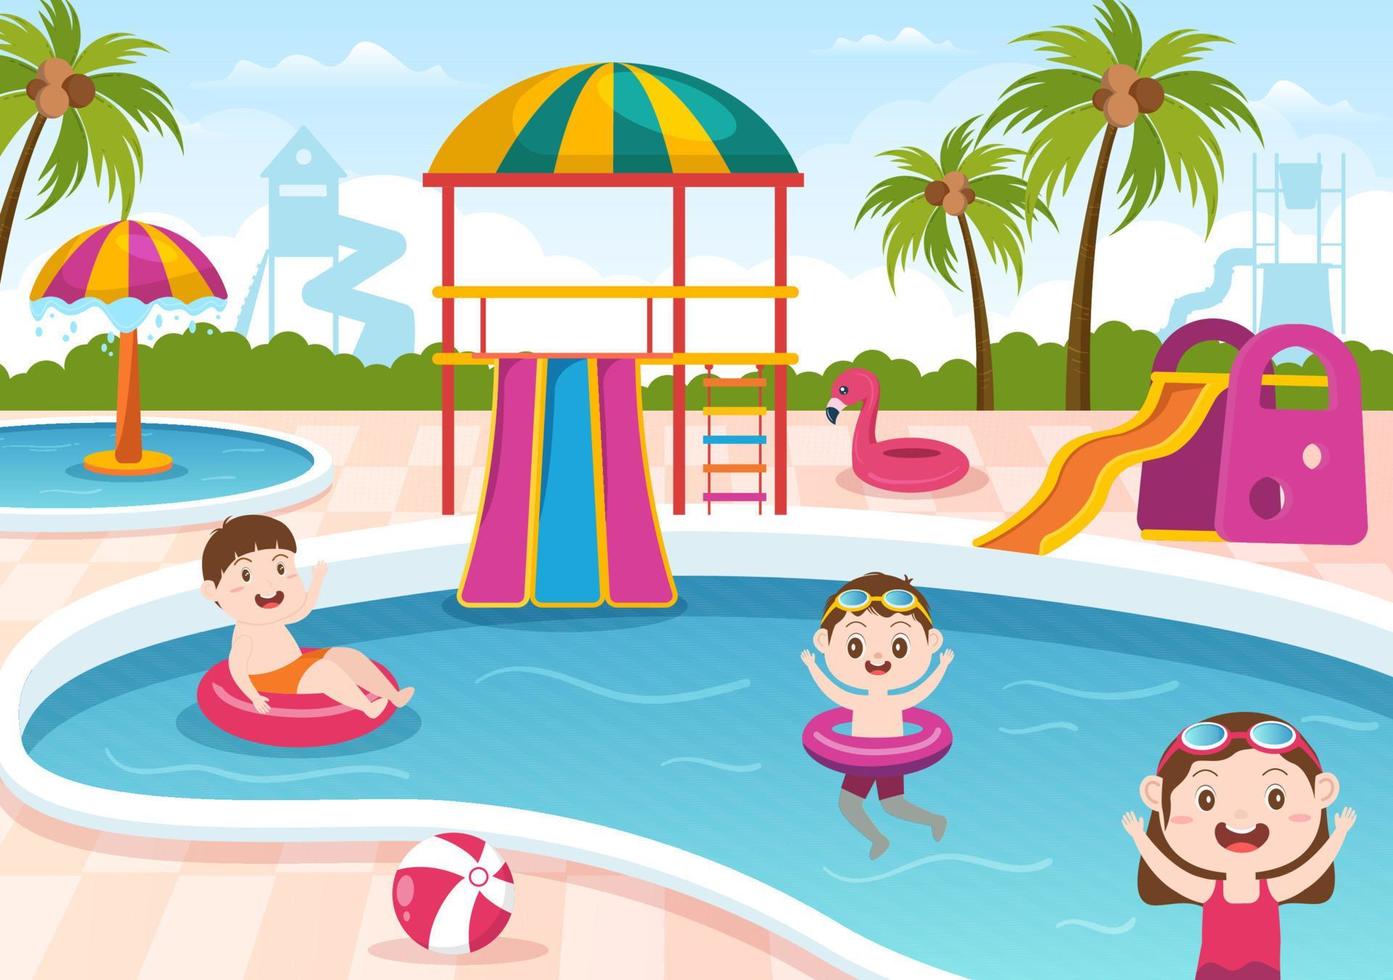 parque aquático com piscina, diversão, escorregador, palmeiras e as crianças nadam para recreação e playground ao ar livre em ilustração plana dos desenhos animados vetor